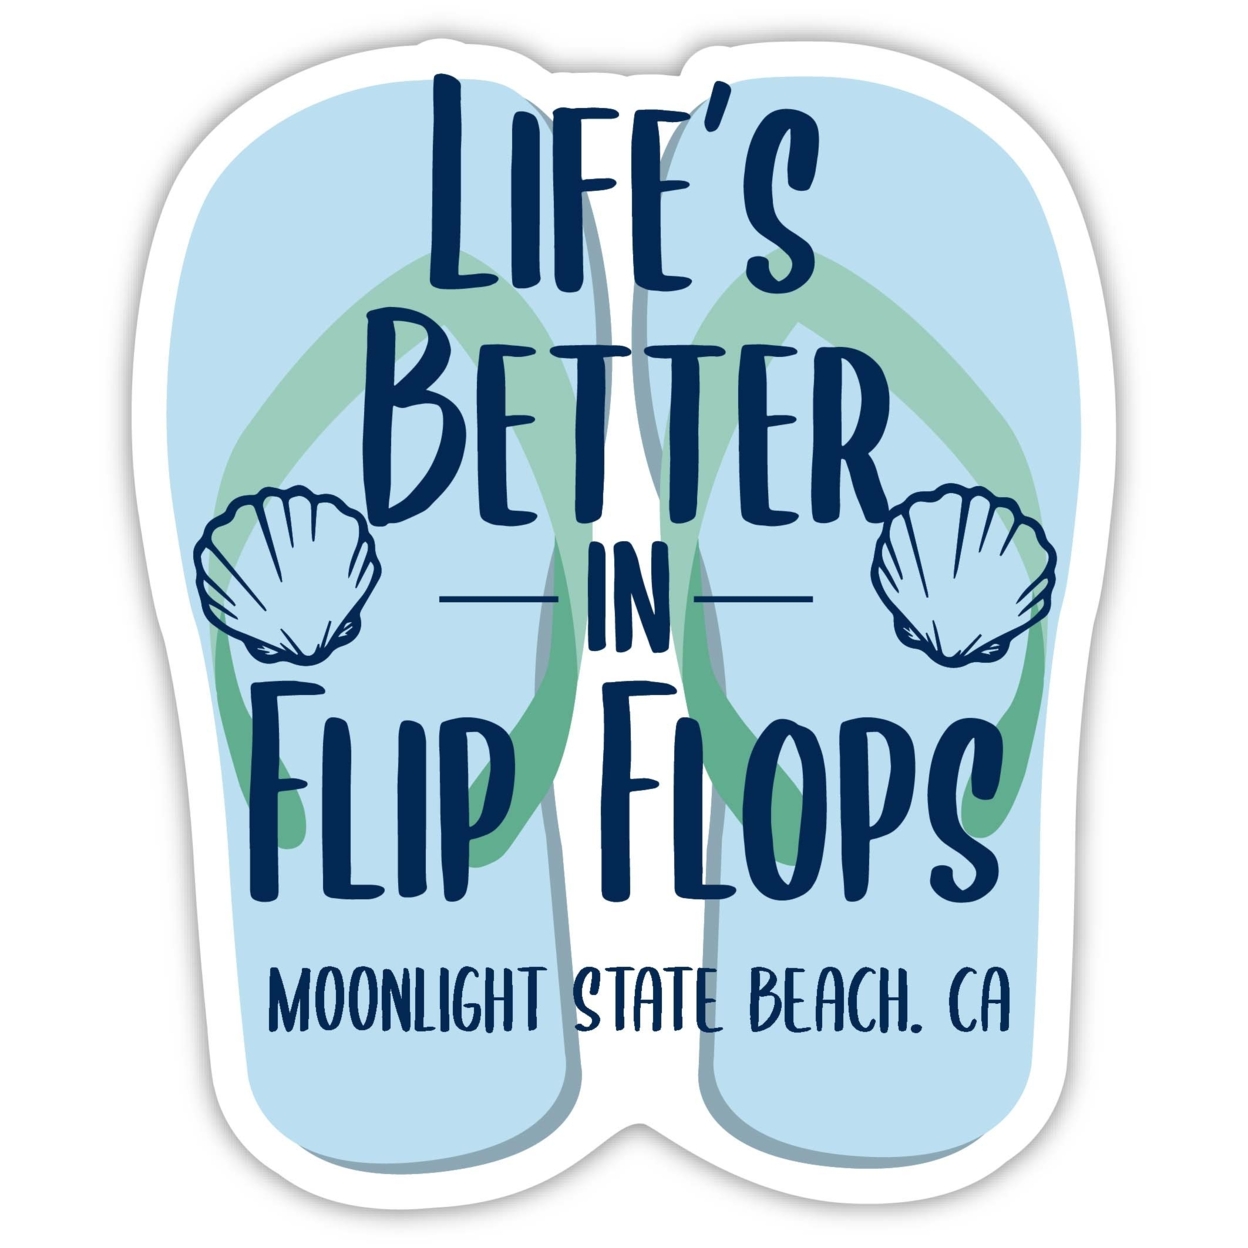 Moonlight State Beach California Souvenir 4 Inch Vinyl Decal Sticker Flip Flop Design